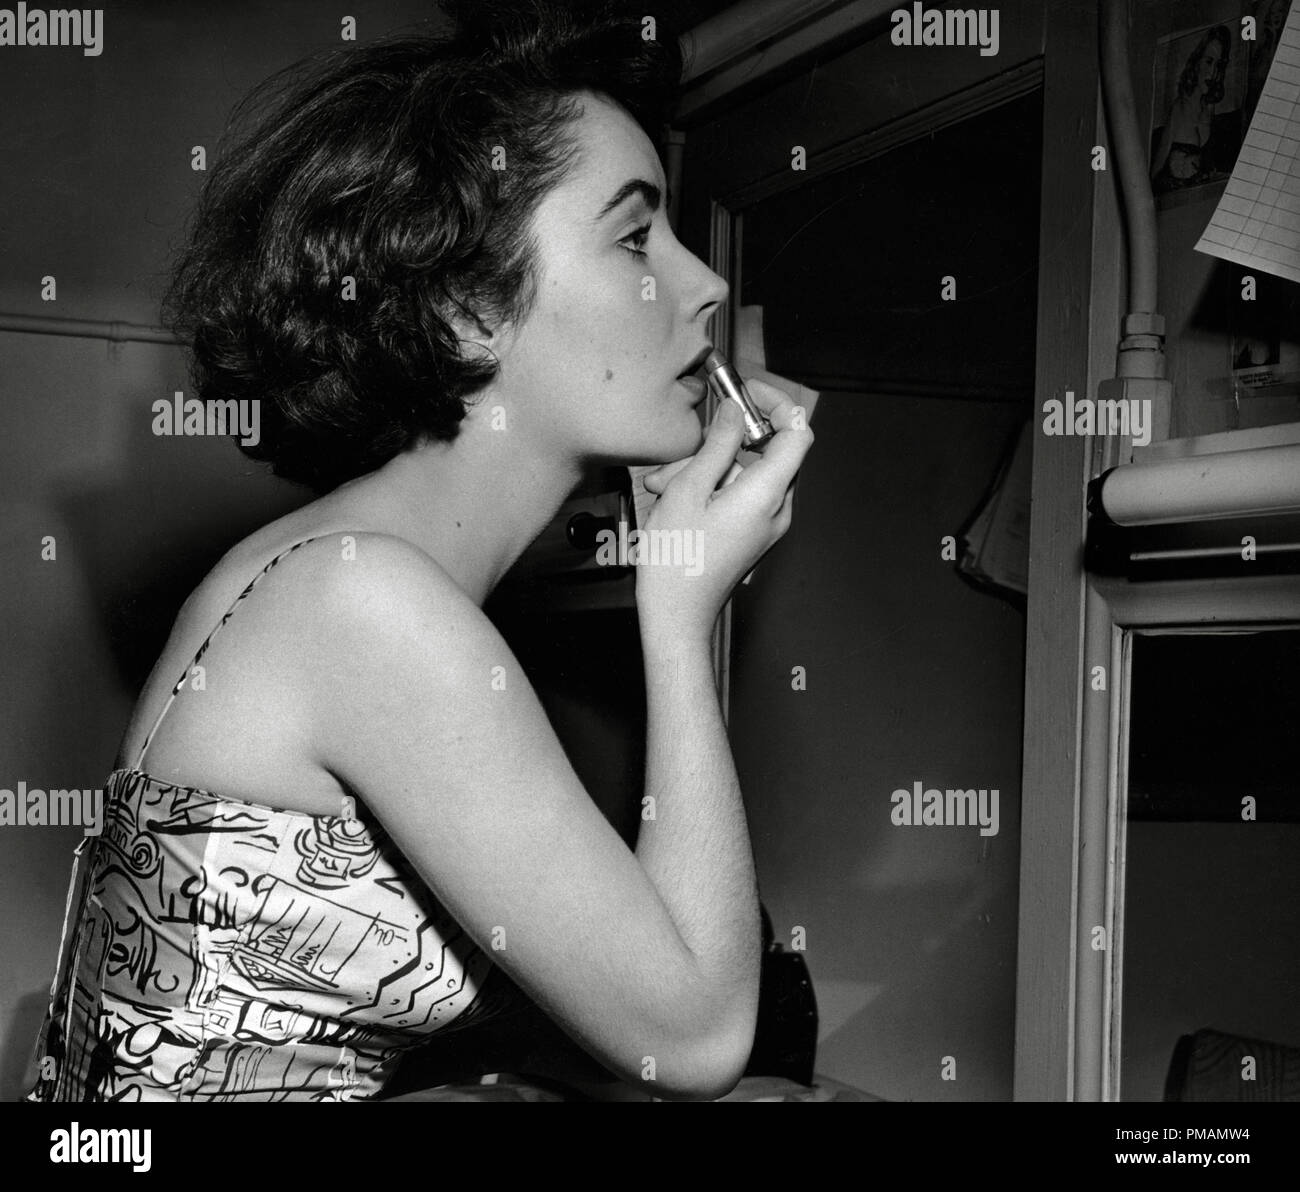 Elizabeth Taylor rossetto circa 1950 Riferimento File # 33505 055THA per  solo uso editoriale - Tutti i diritti riservati Foto stock - Alamy